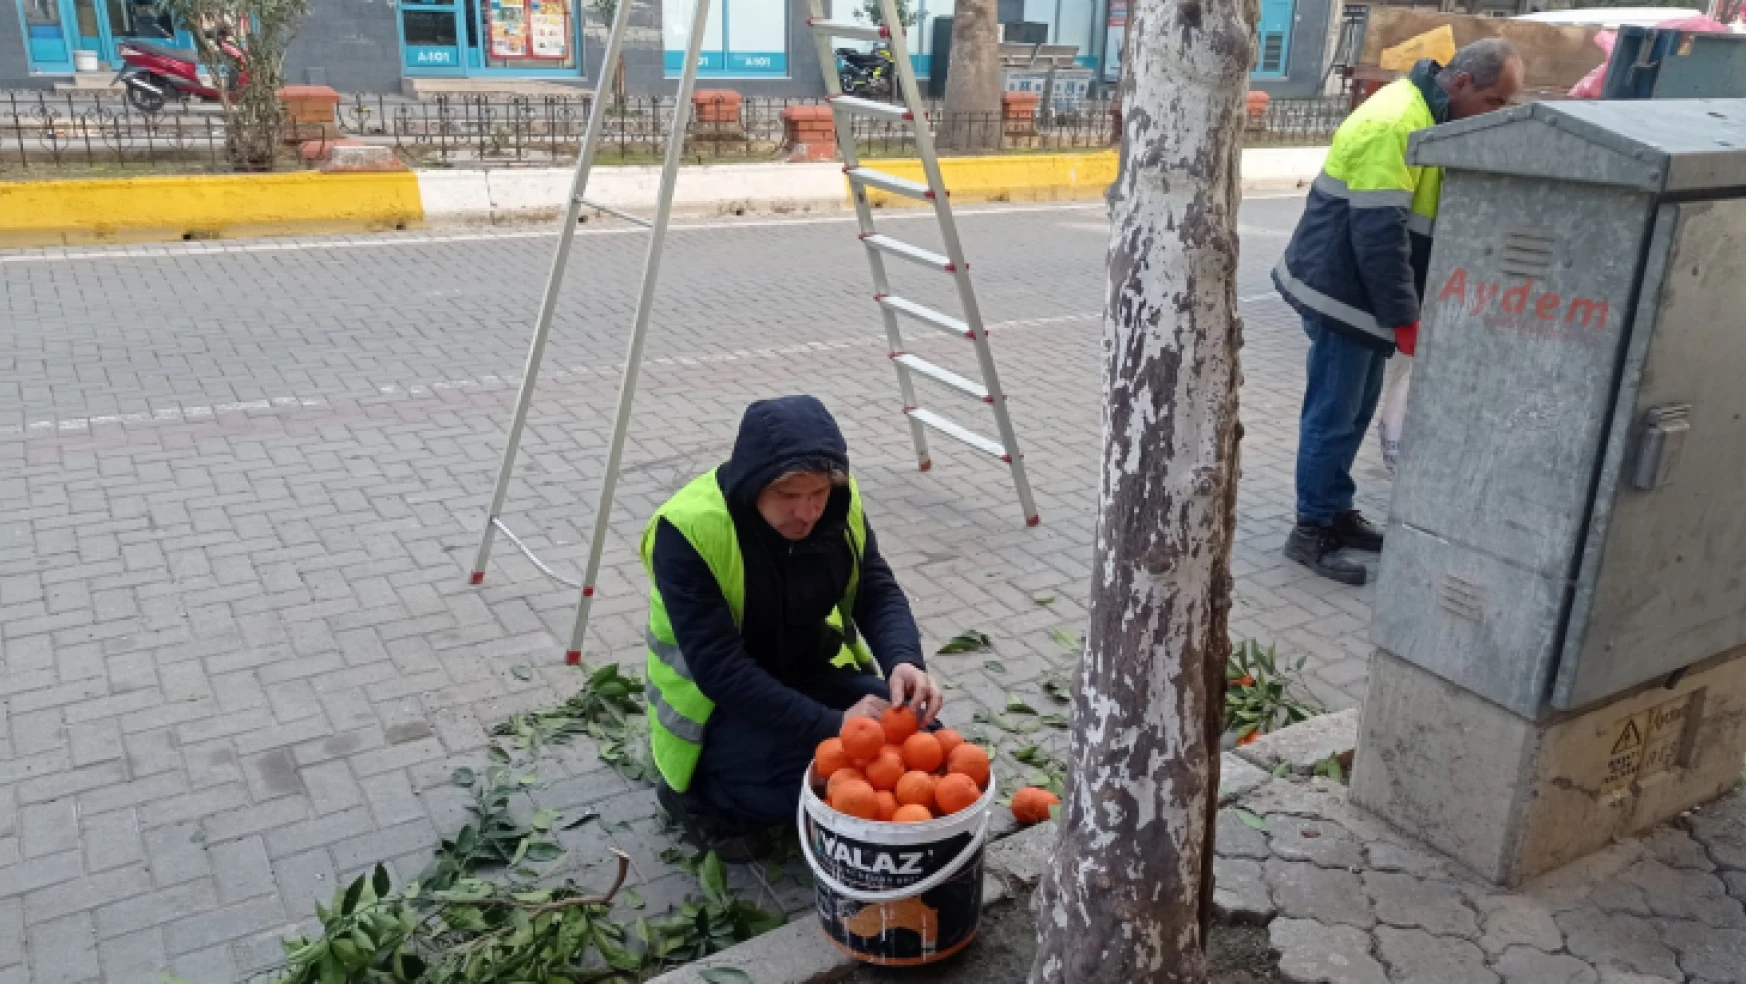 Nazilli'de toplanan turunçlar öğrencilere burs oluyor